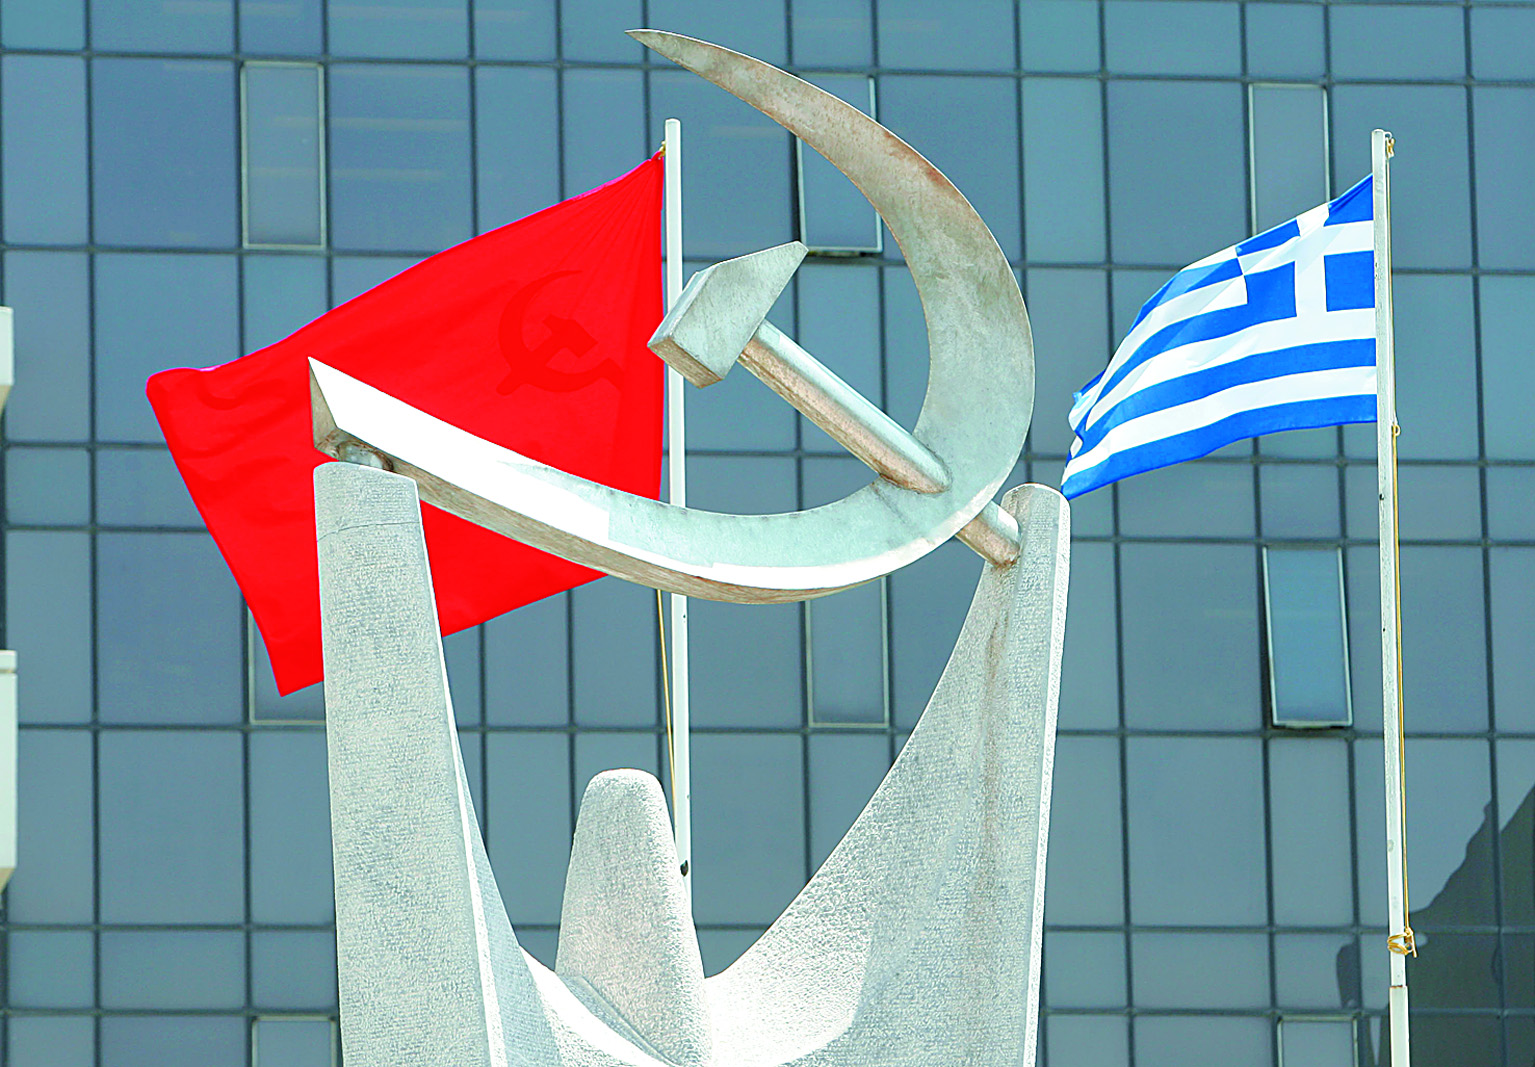 KKE condemns DIGEA for censorship | tovima.gr